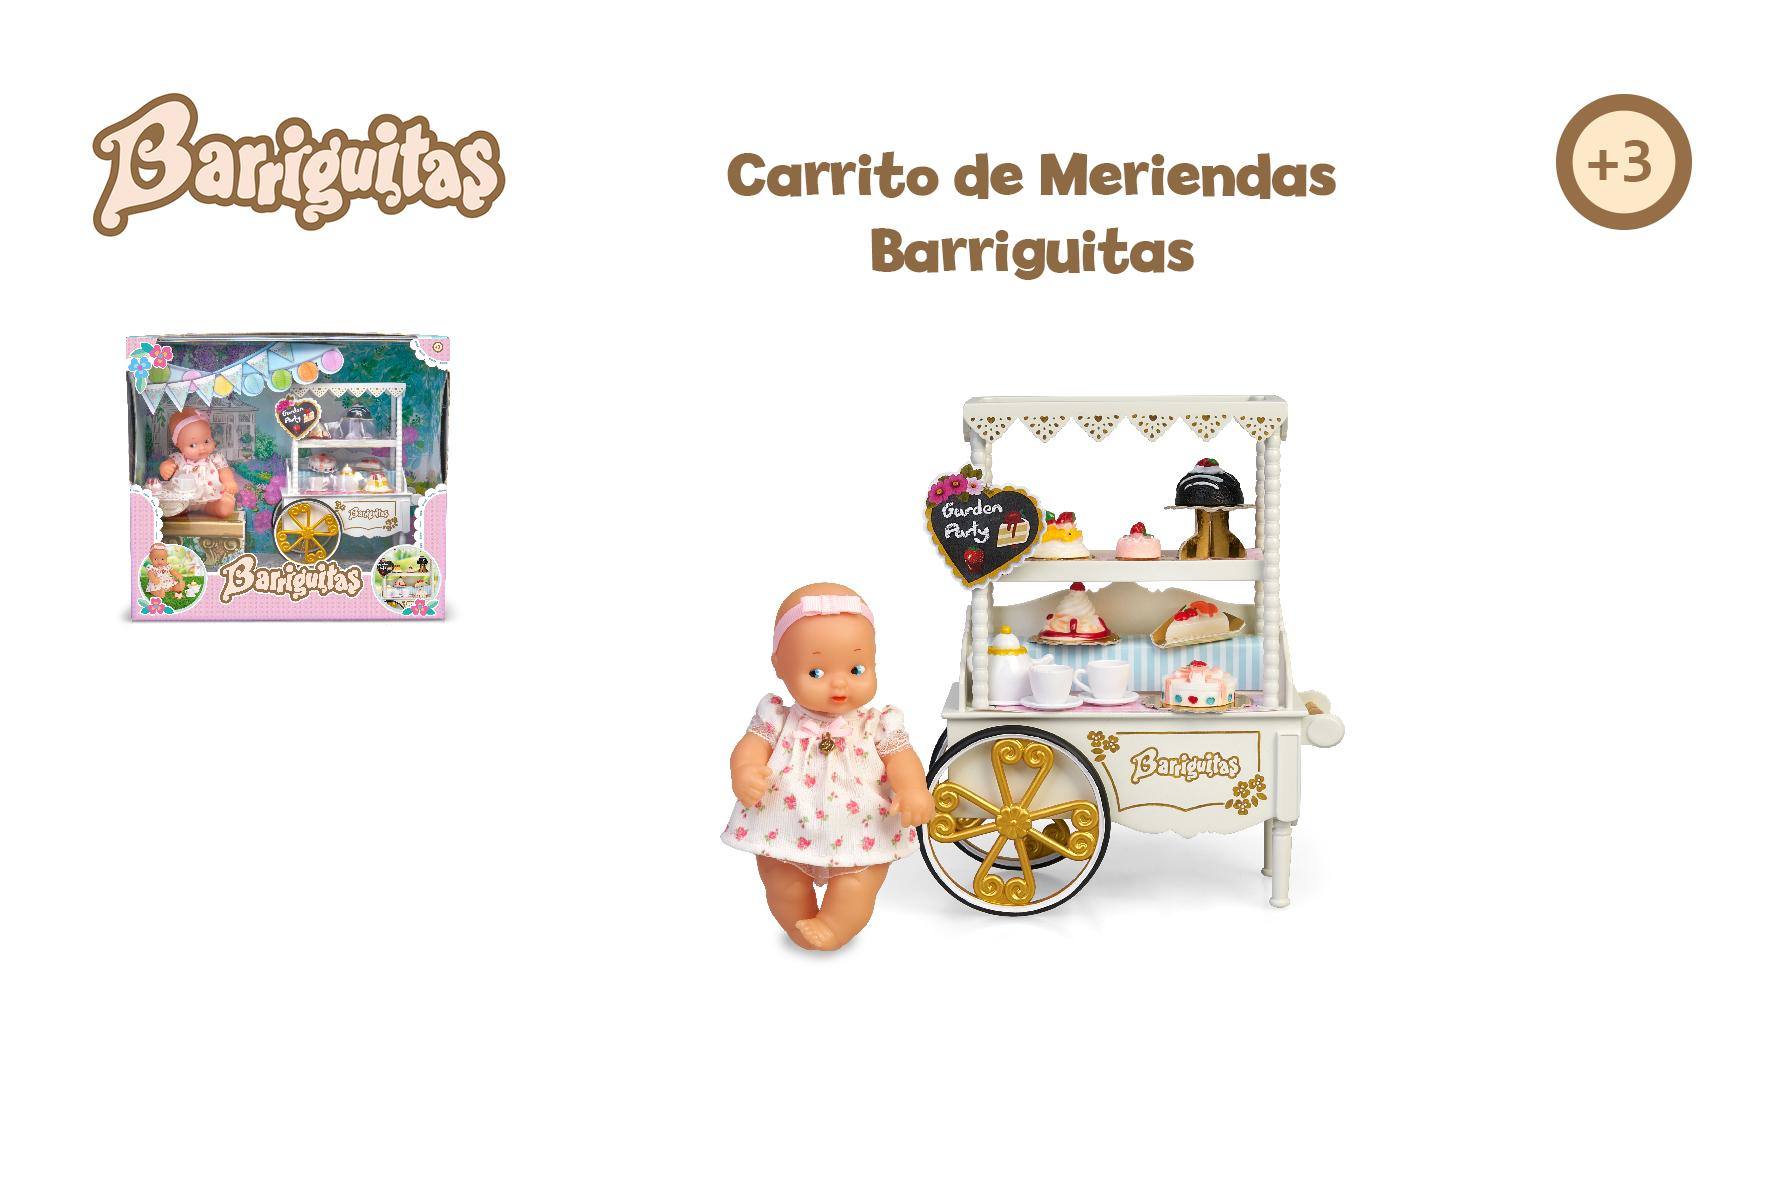 CARRITO DE MERIENDAS BARRIGUITAS 700017019